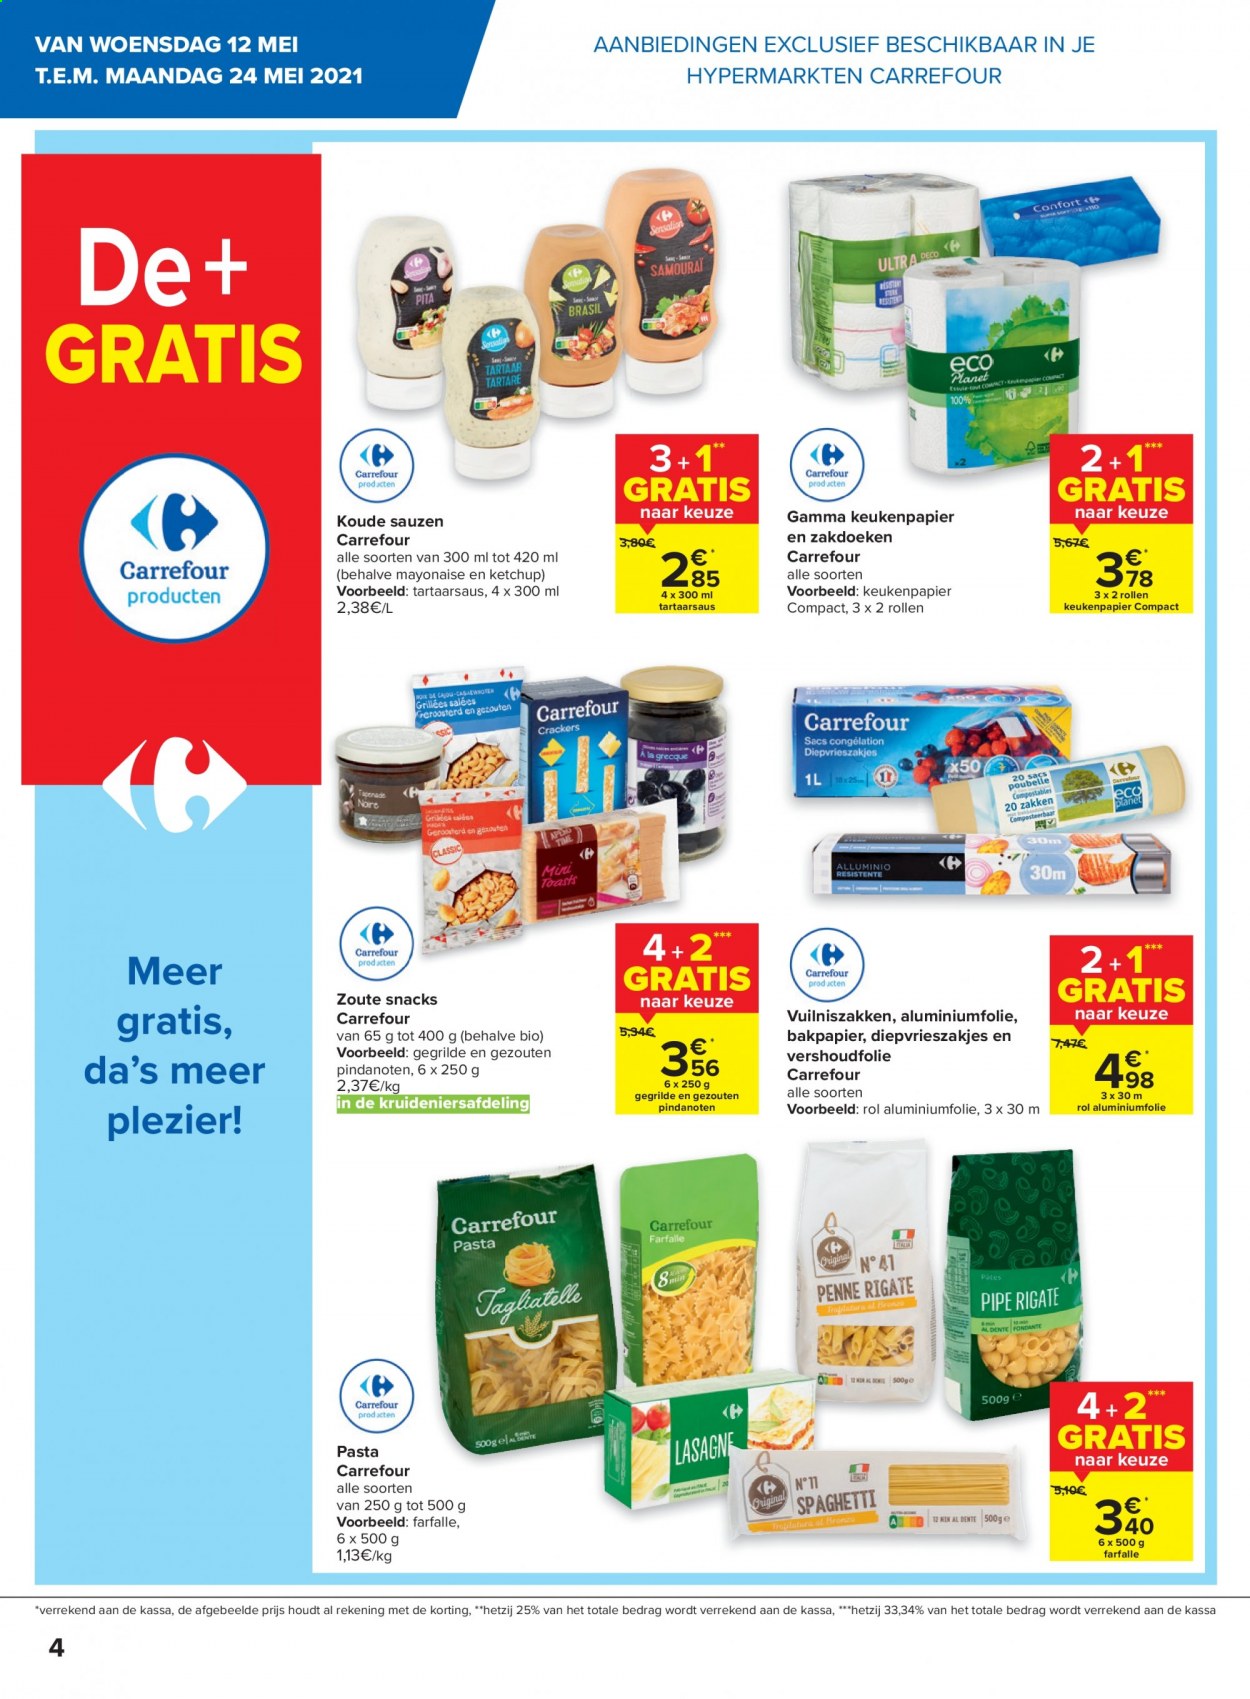 thumbnail - Carrefour-aanbieding - 12/05/2021 - 25/05/2021 -  producten in de aanbieding - keukenpapier, mayonaise, pasta, farfalle, Gamma. Pagina 4.